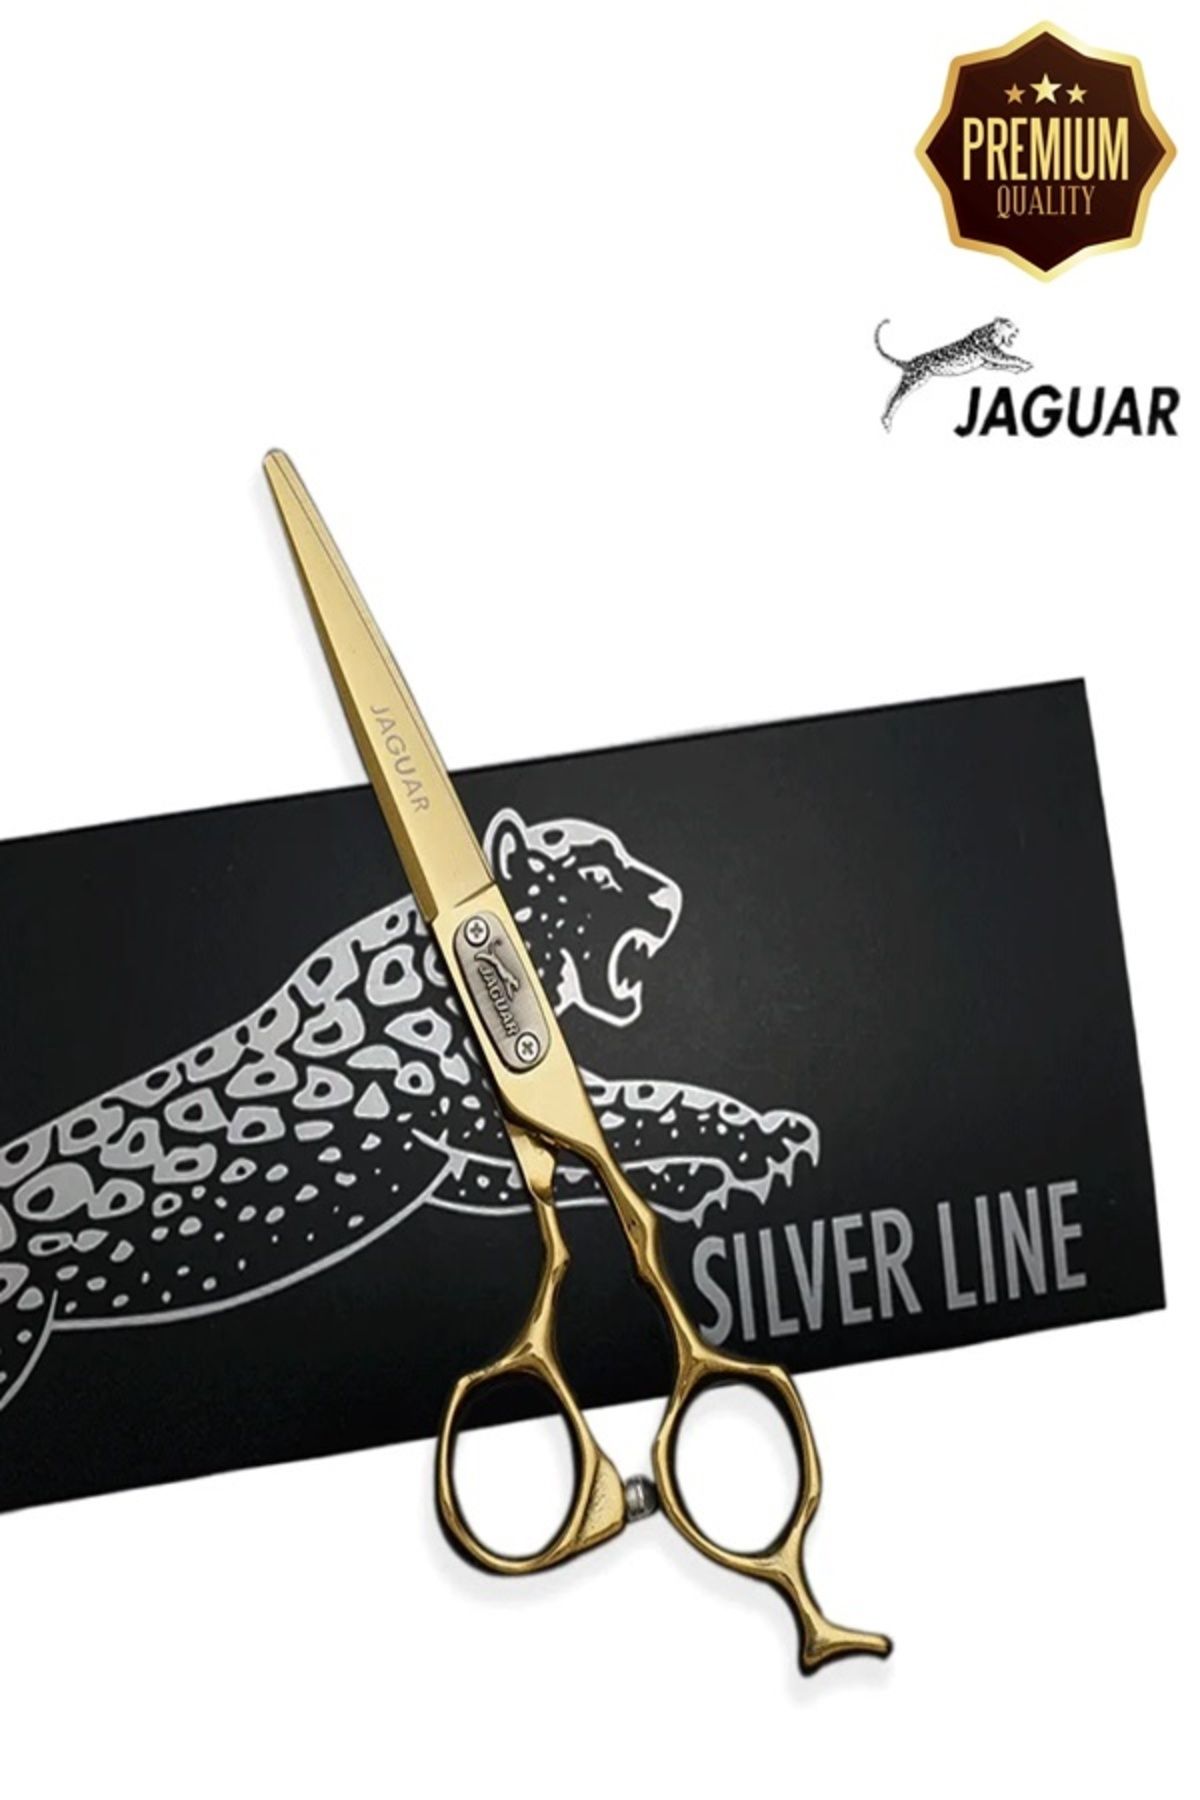 Jaguar Jaguar Gold Serisi Düz Uçlu Saç Kesim Makası Deri Çantalı Pro Berber Kuaför Makası 6 İnç XLJ52B